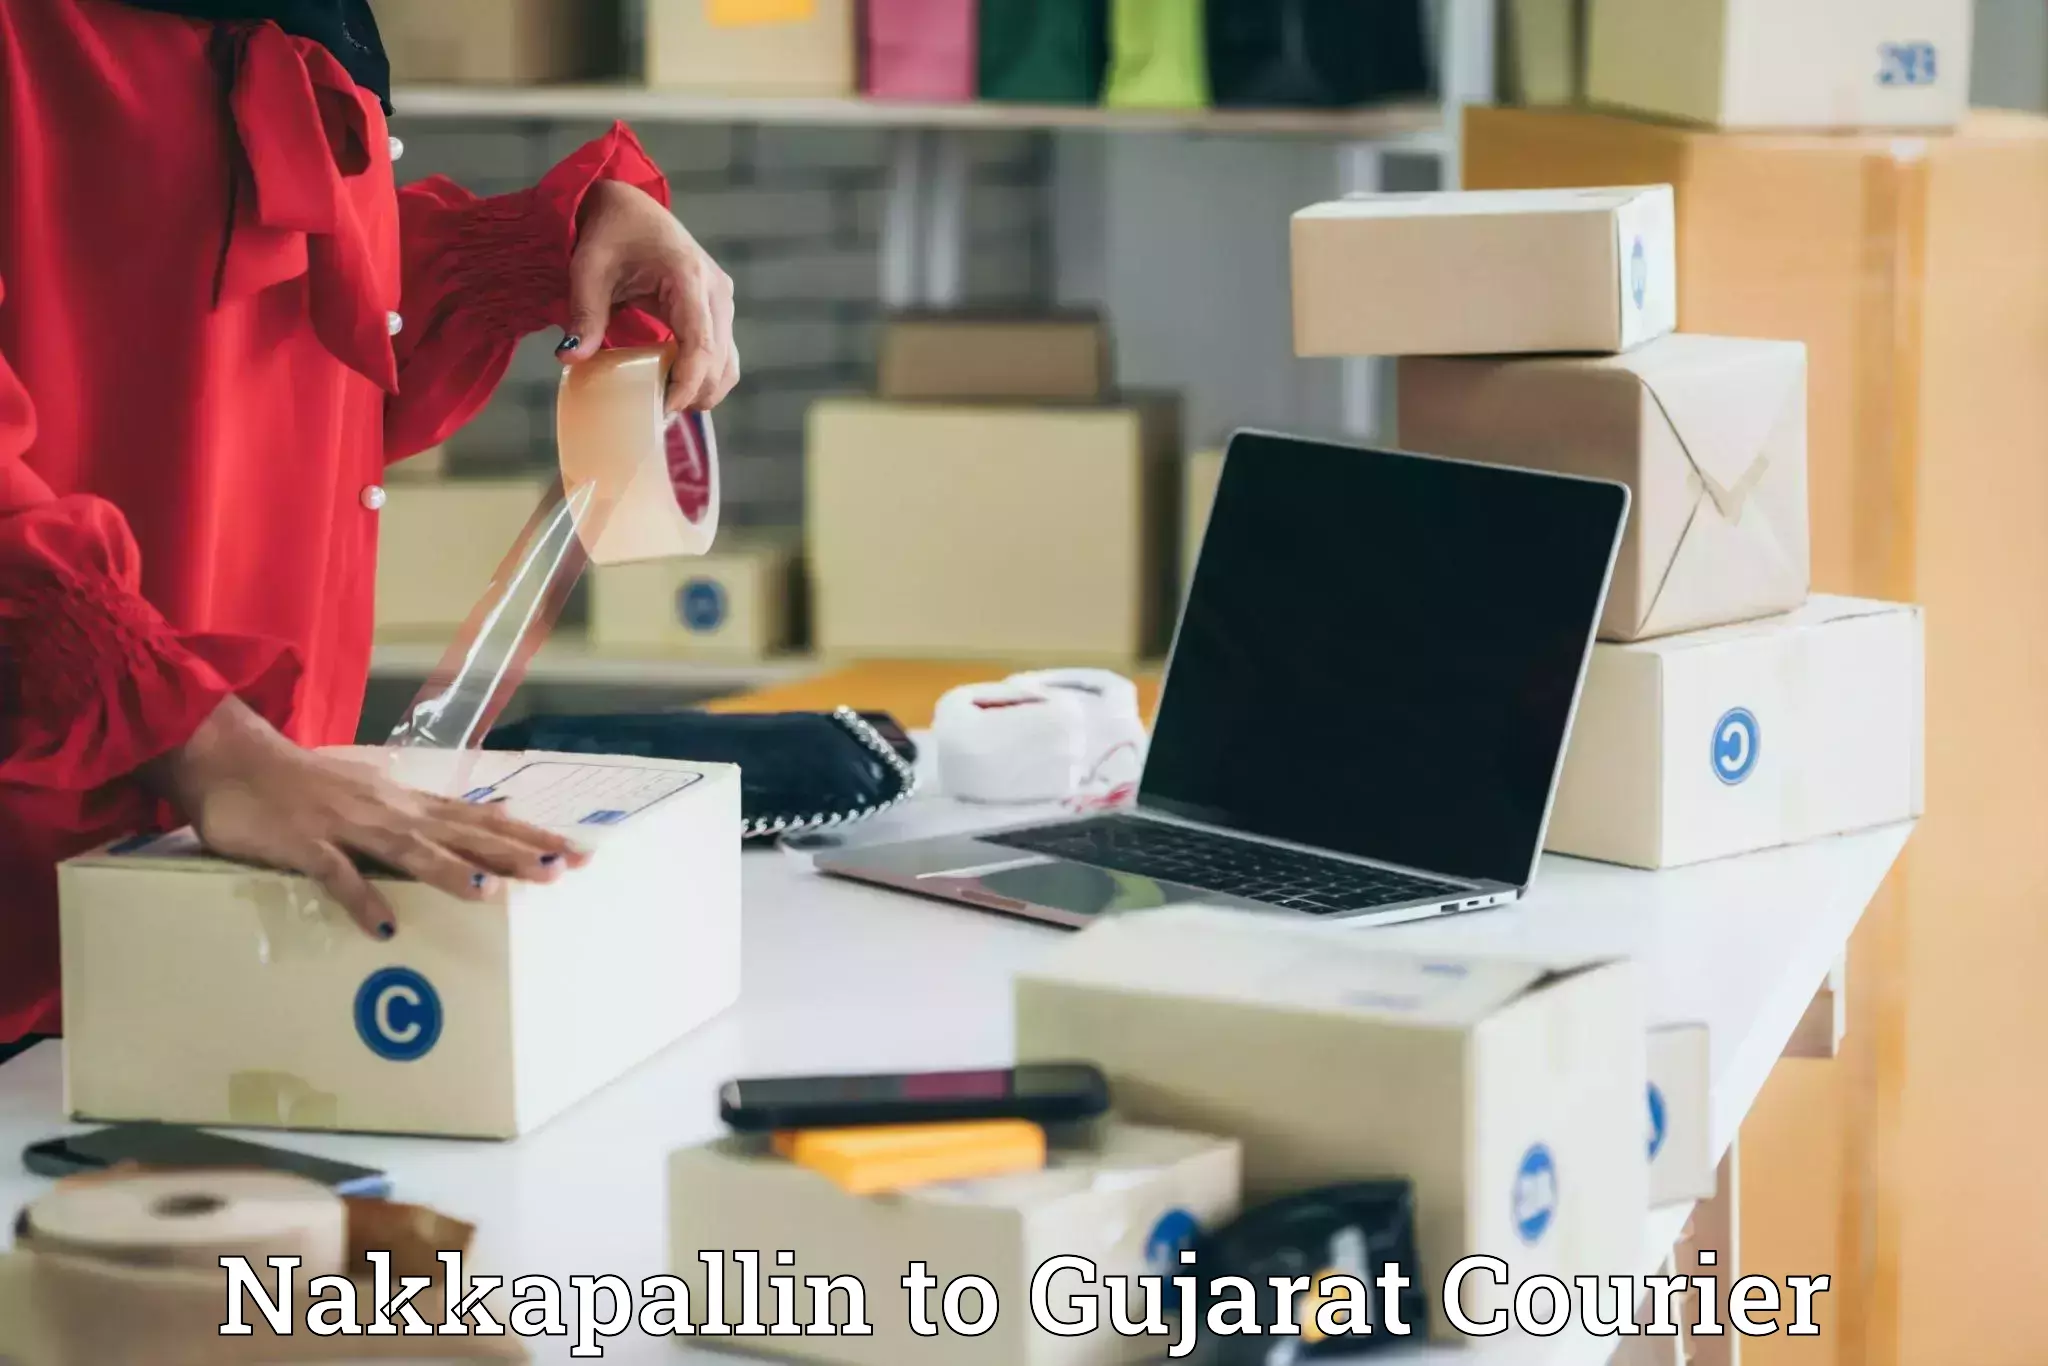 Sustainable courier practices Nakkapallin to Gujarat